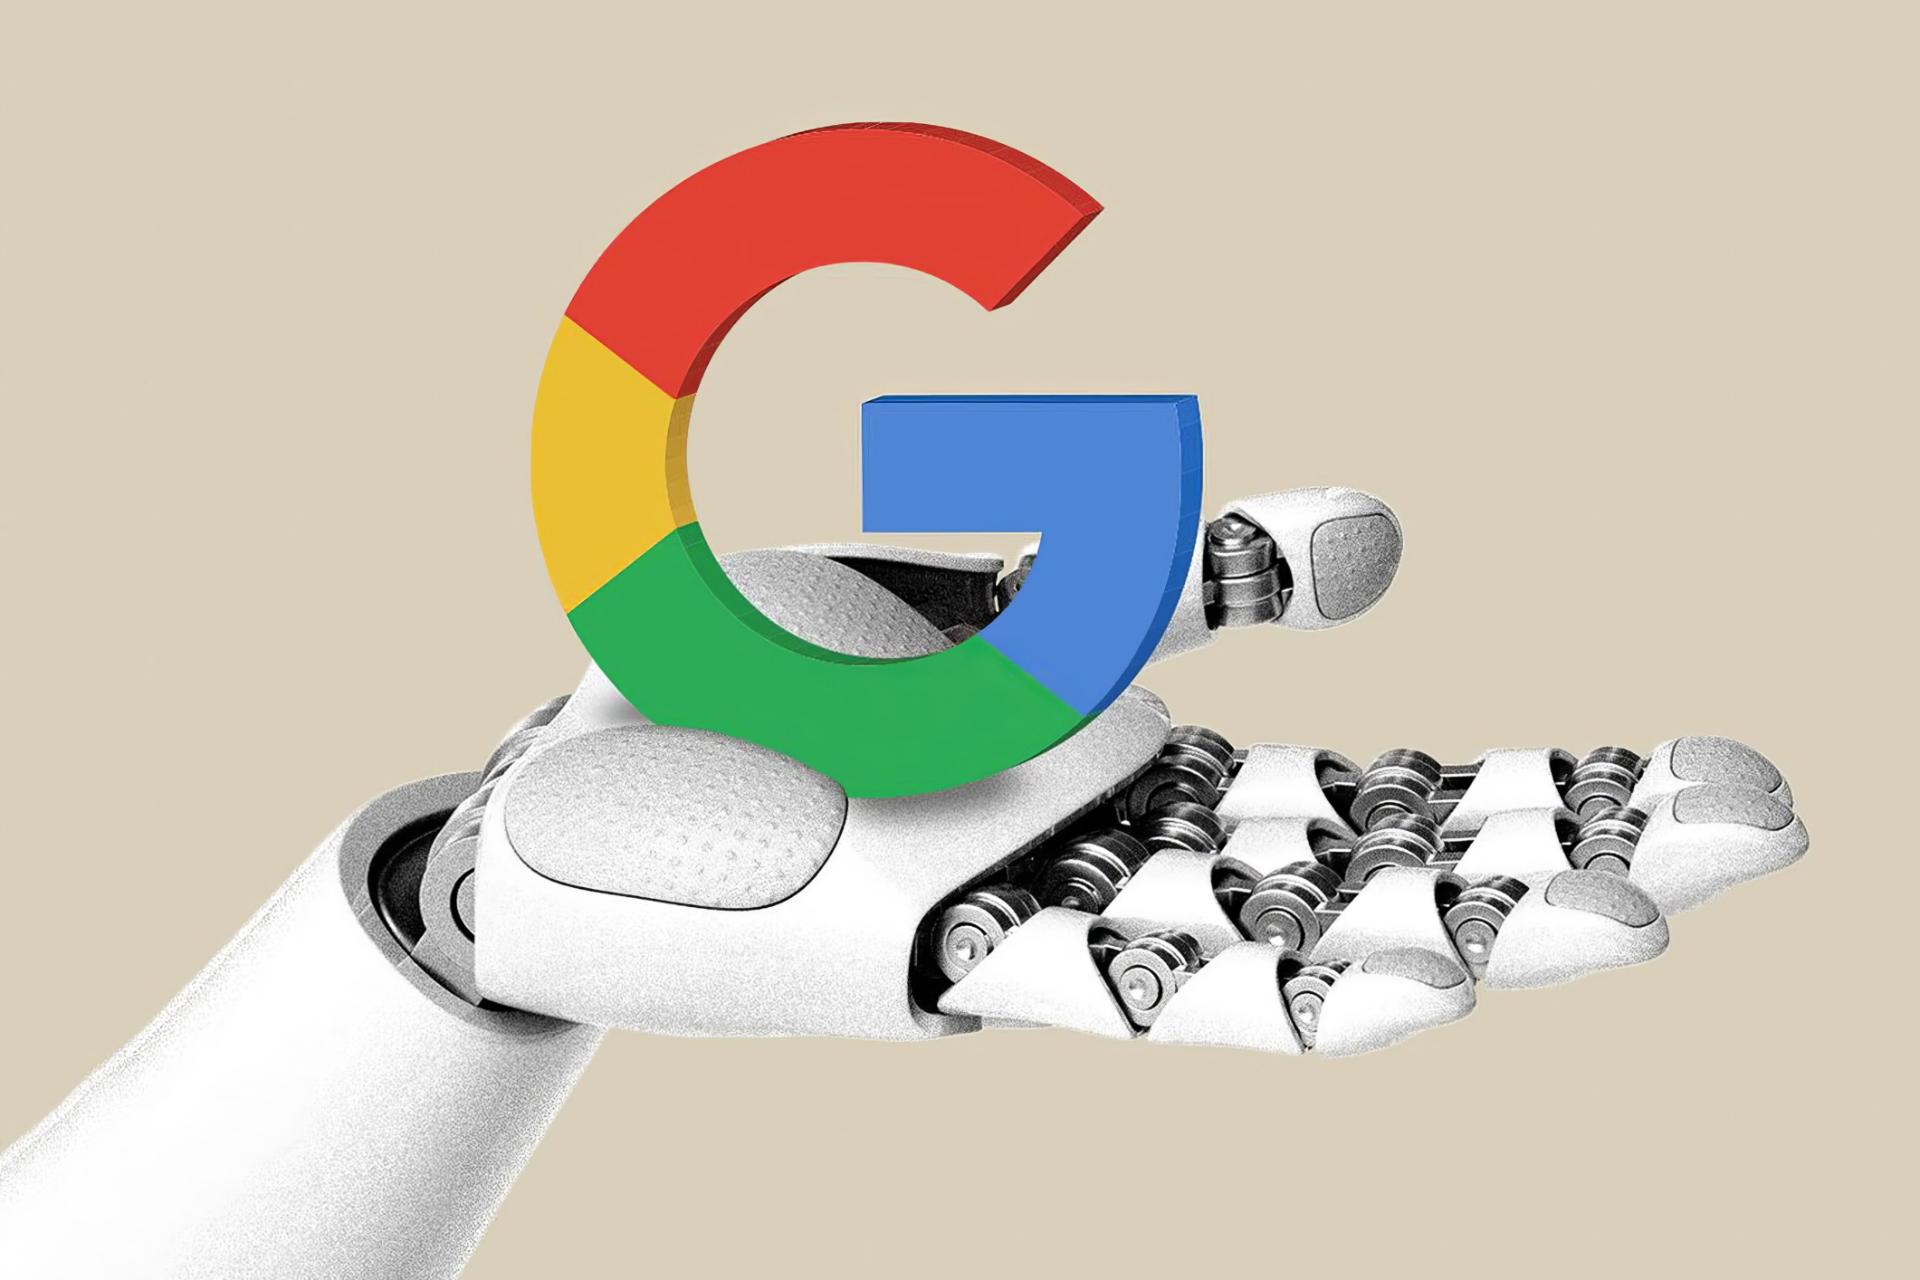 مرجع متخصصين ايران لوگوي گوگل در دست ربات